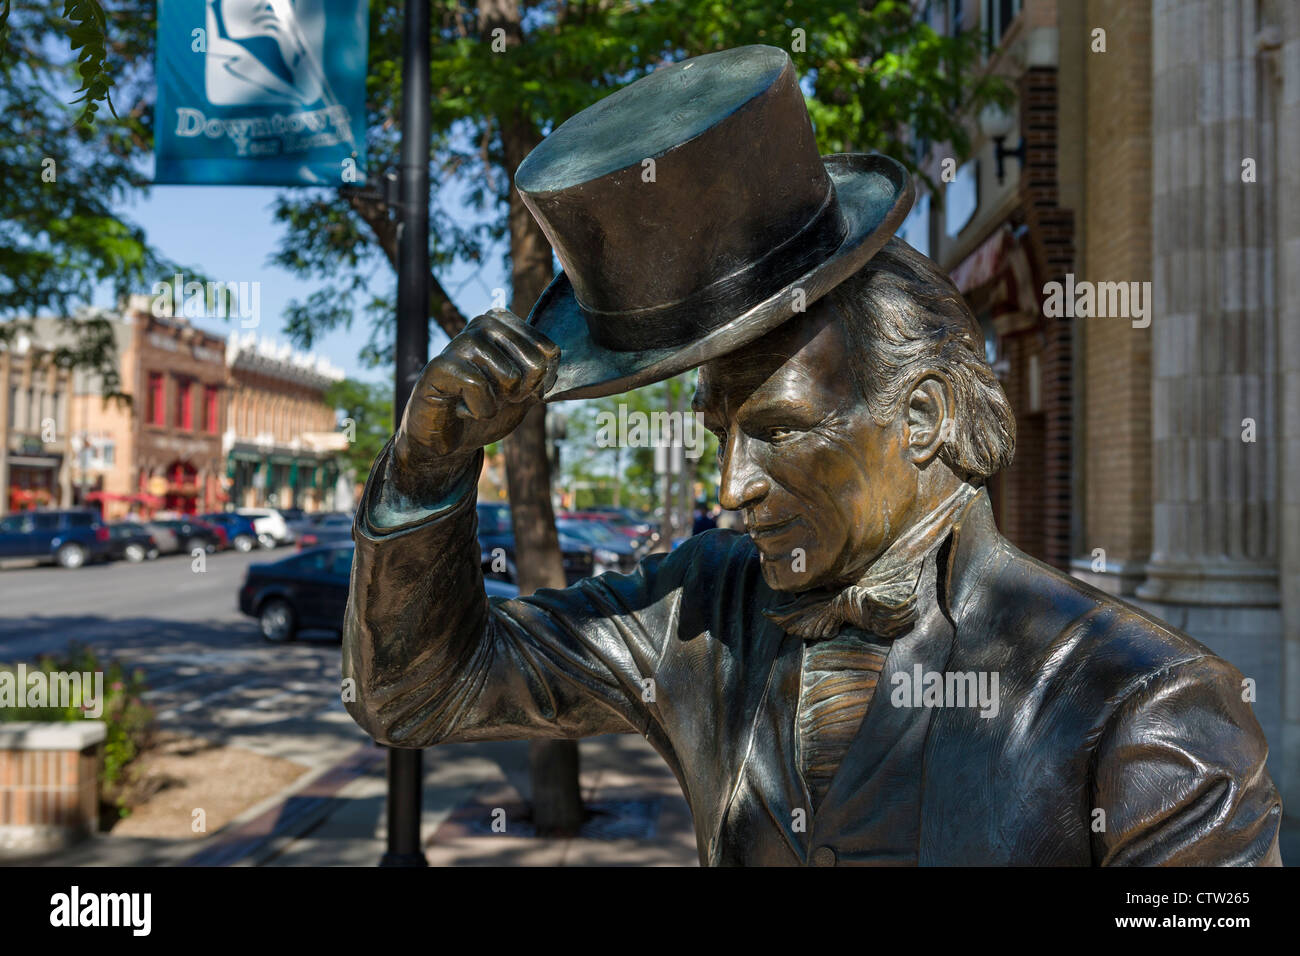 Statue du président James Monroe, l'un d'une série de statues de bronze de présidents des États-Unis dans le centre-ville de Rapid City, Dakota du Sud, USA Banque D'Images